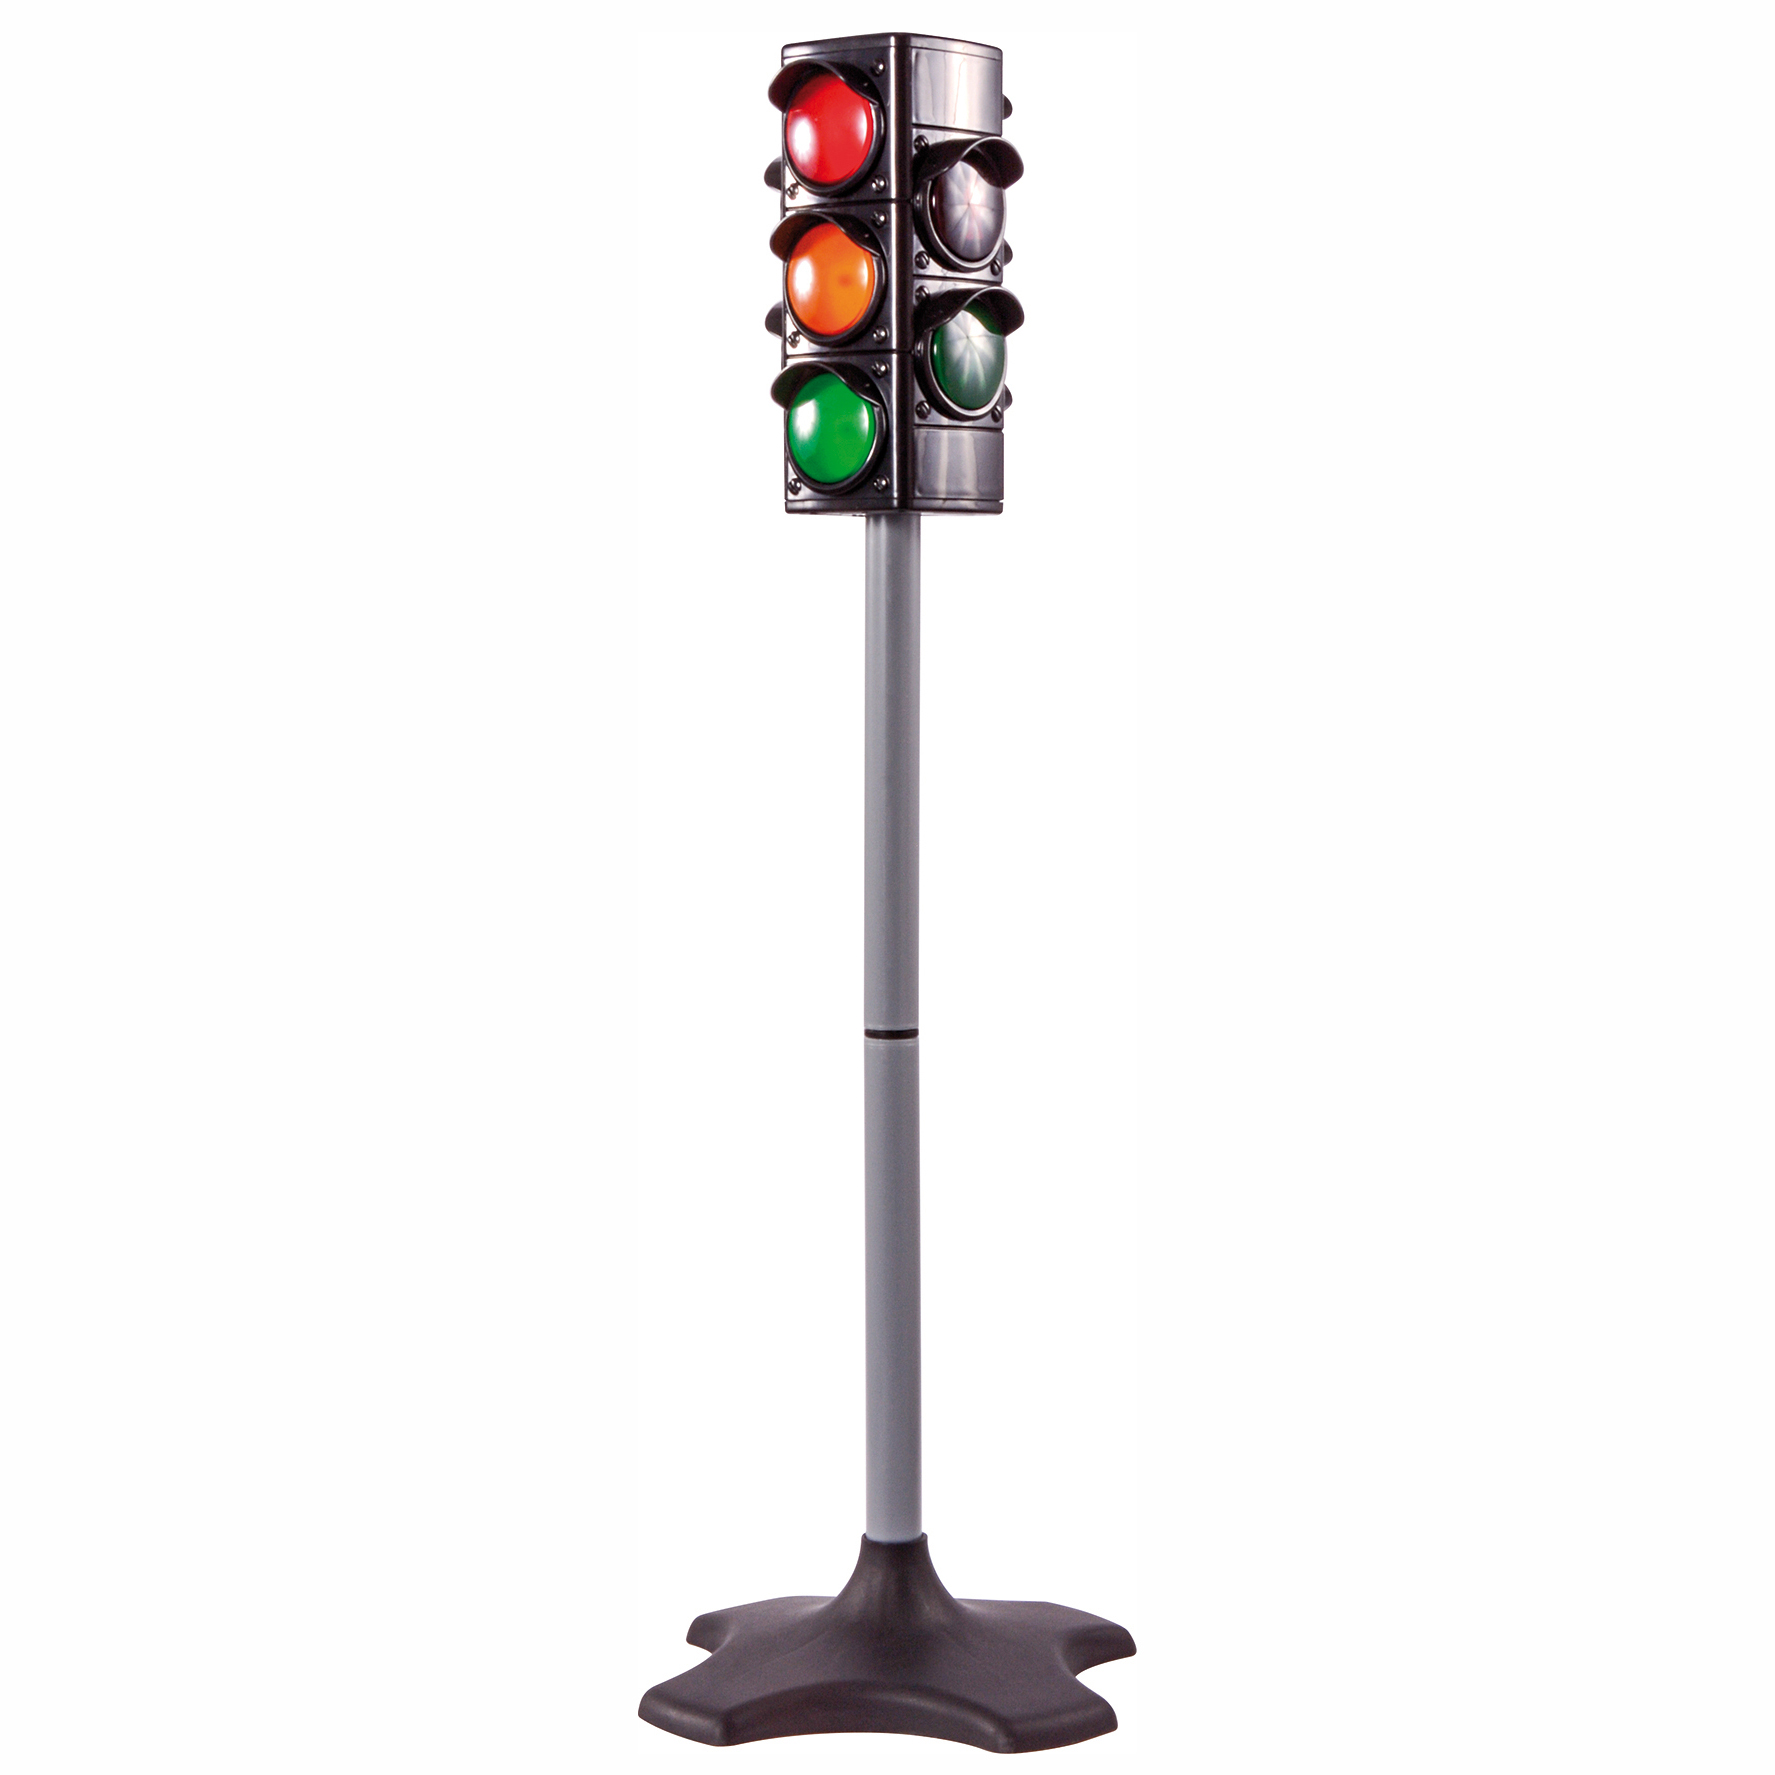 Ampel Lampe Spielzeug Verkehrssicherheit Frühe Bildung Requisiten Ampel